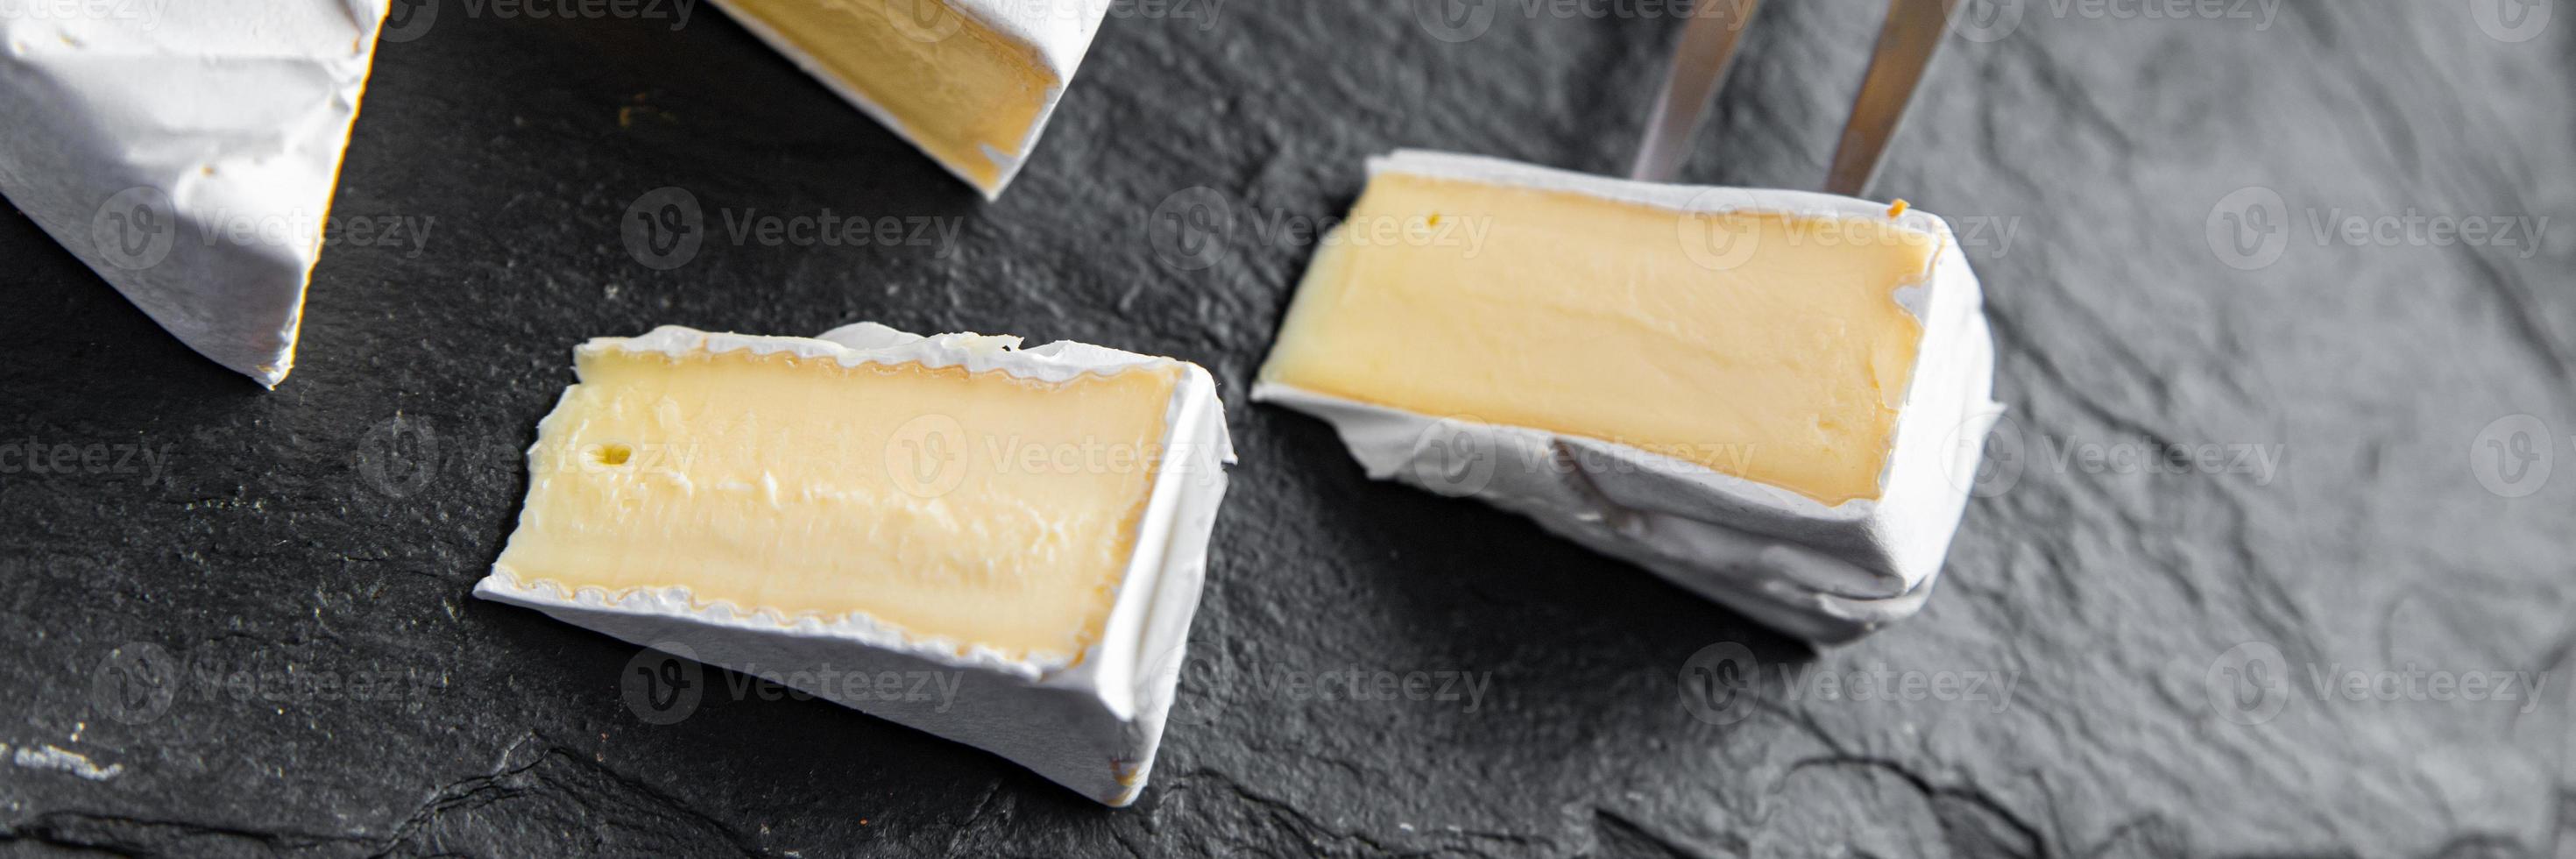 Camembert o queso brie cabeza de queso tierno comida saludable foto